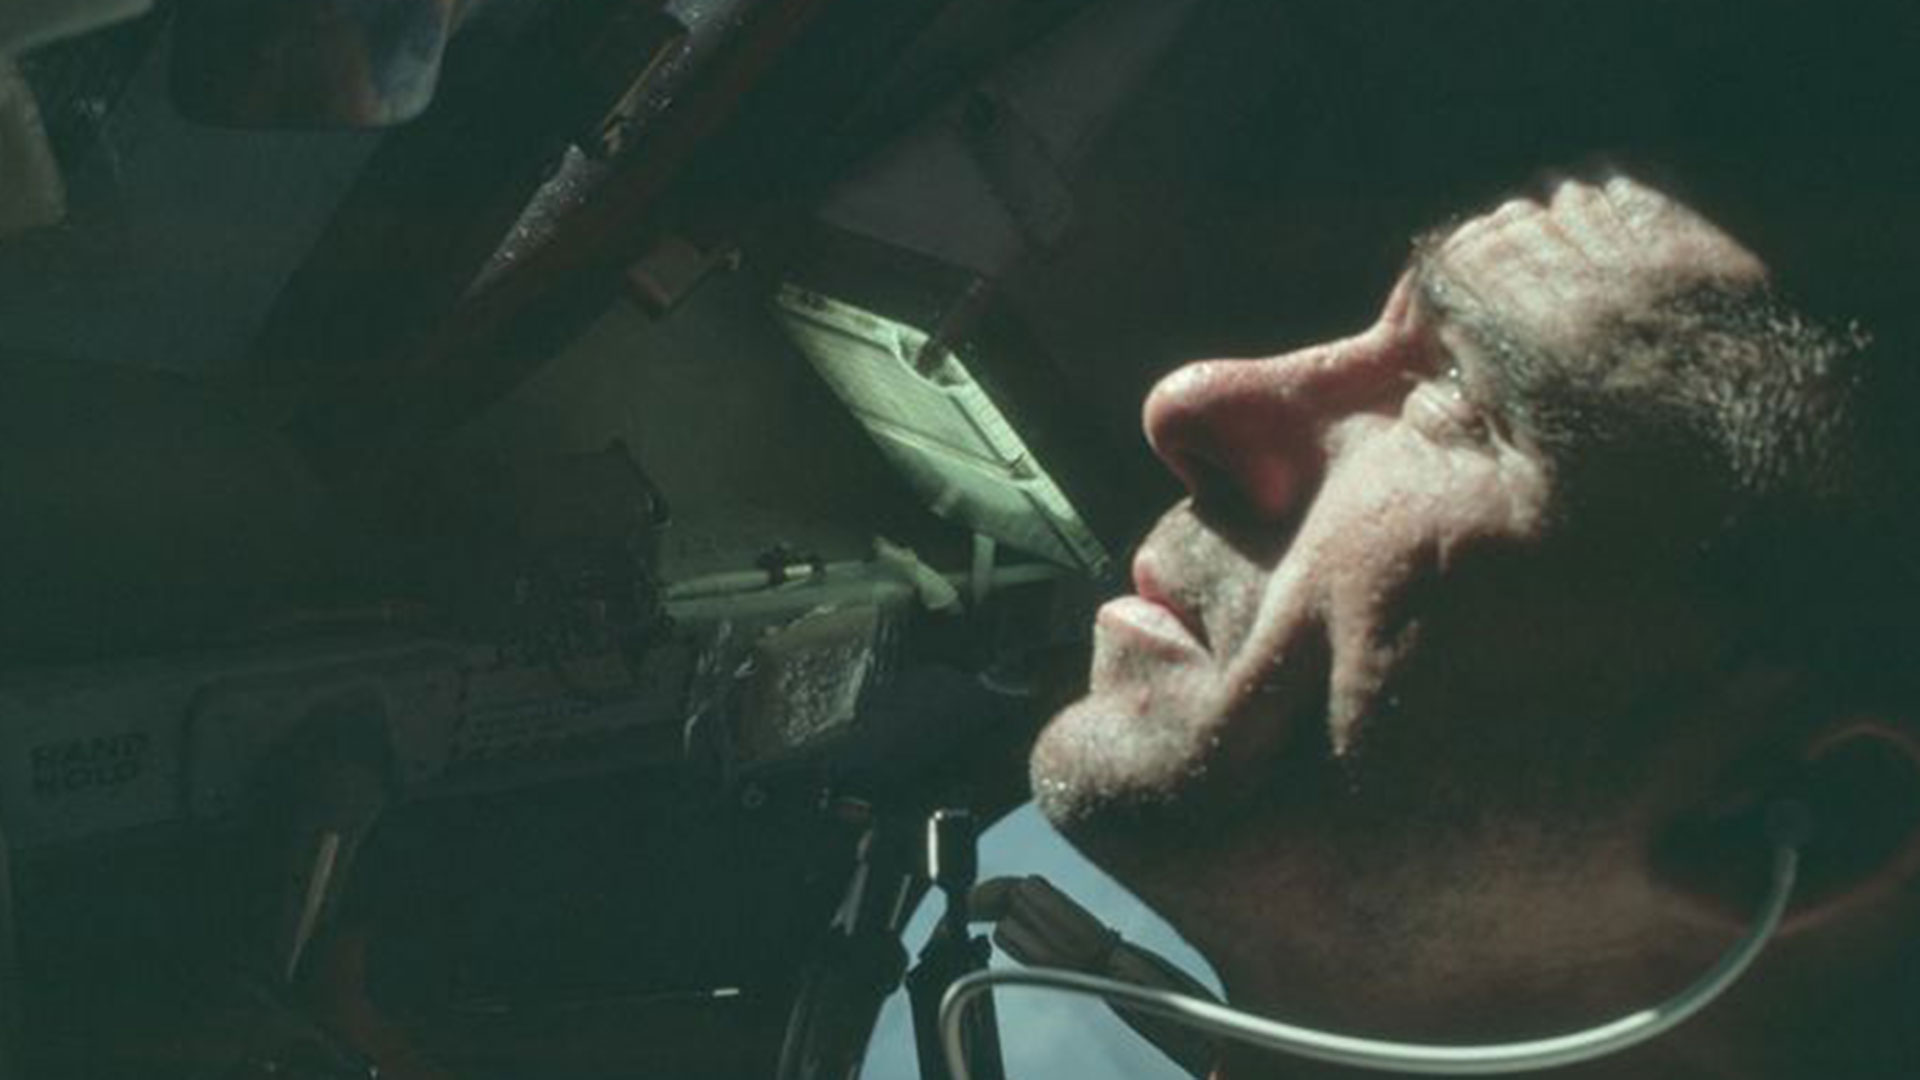 El astronauta Walter Cunningham, piloto del módulo lunar del Apolo 7, es fotografiado durante la misión en octubre de 1968 (NASA/Handout vía Reuters)